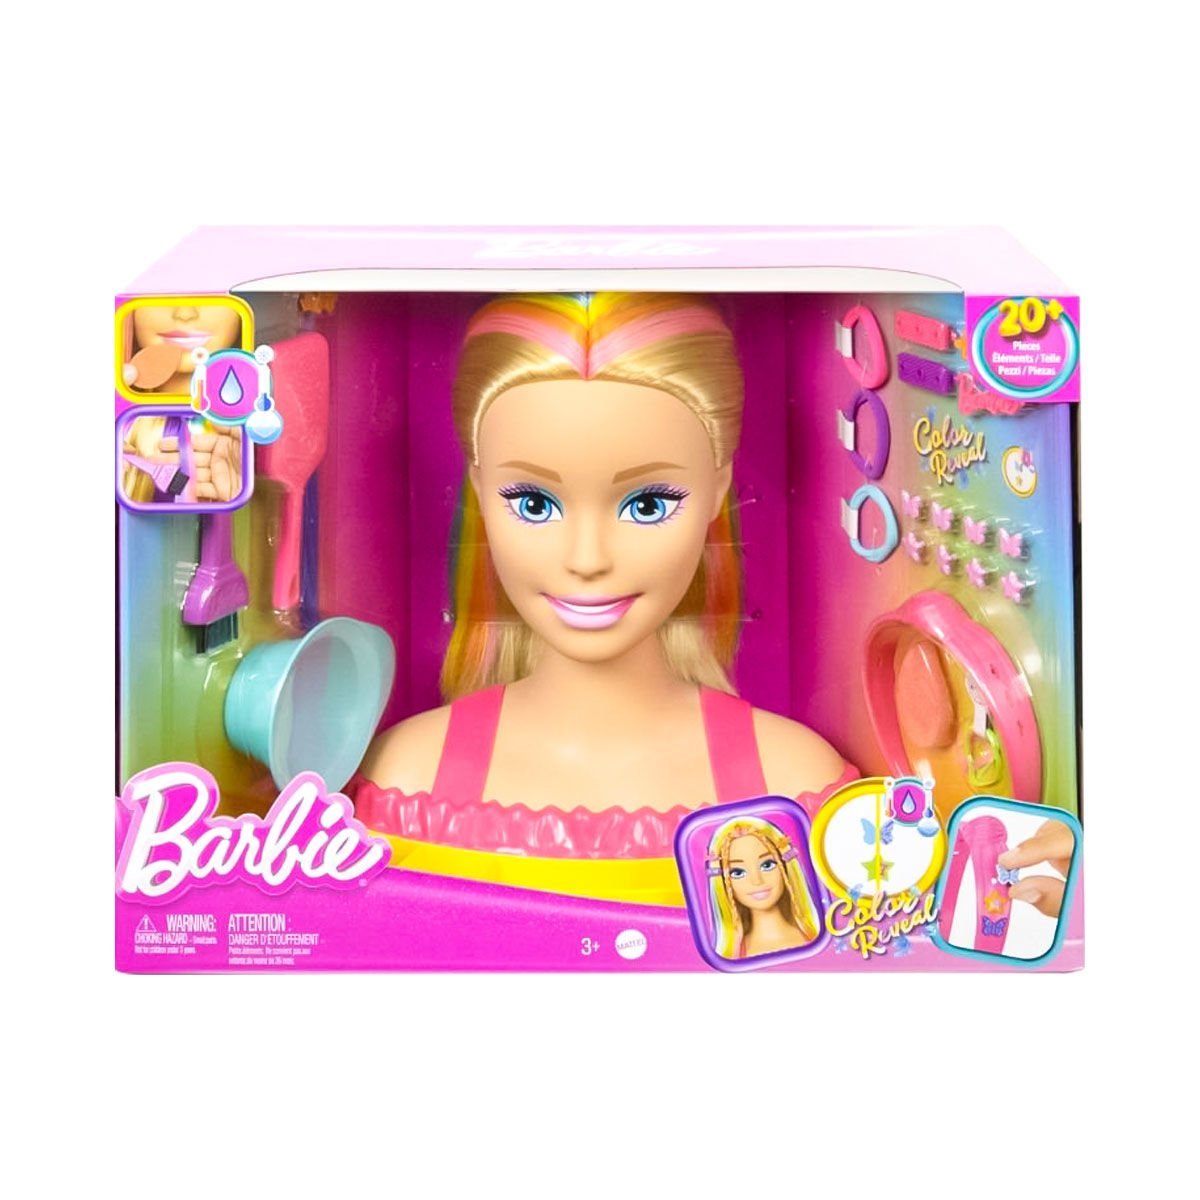 HMD78 Barbie'nin Gökkuşağı Saçlı Büstü ve Aksesuarları